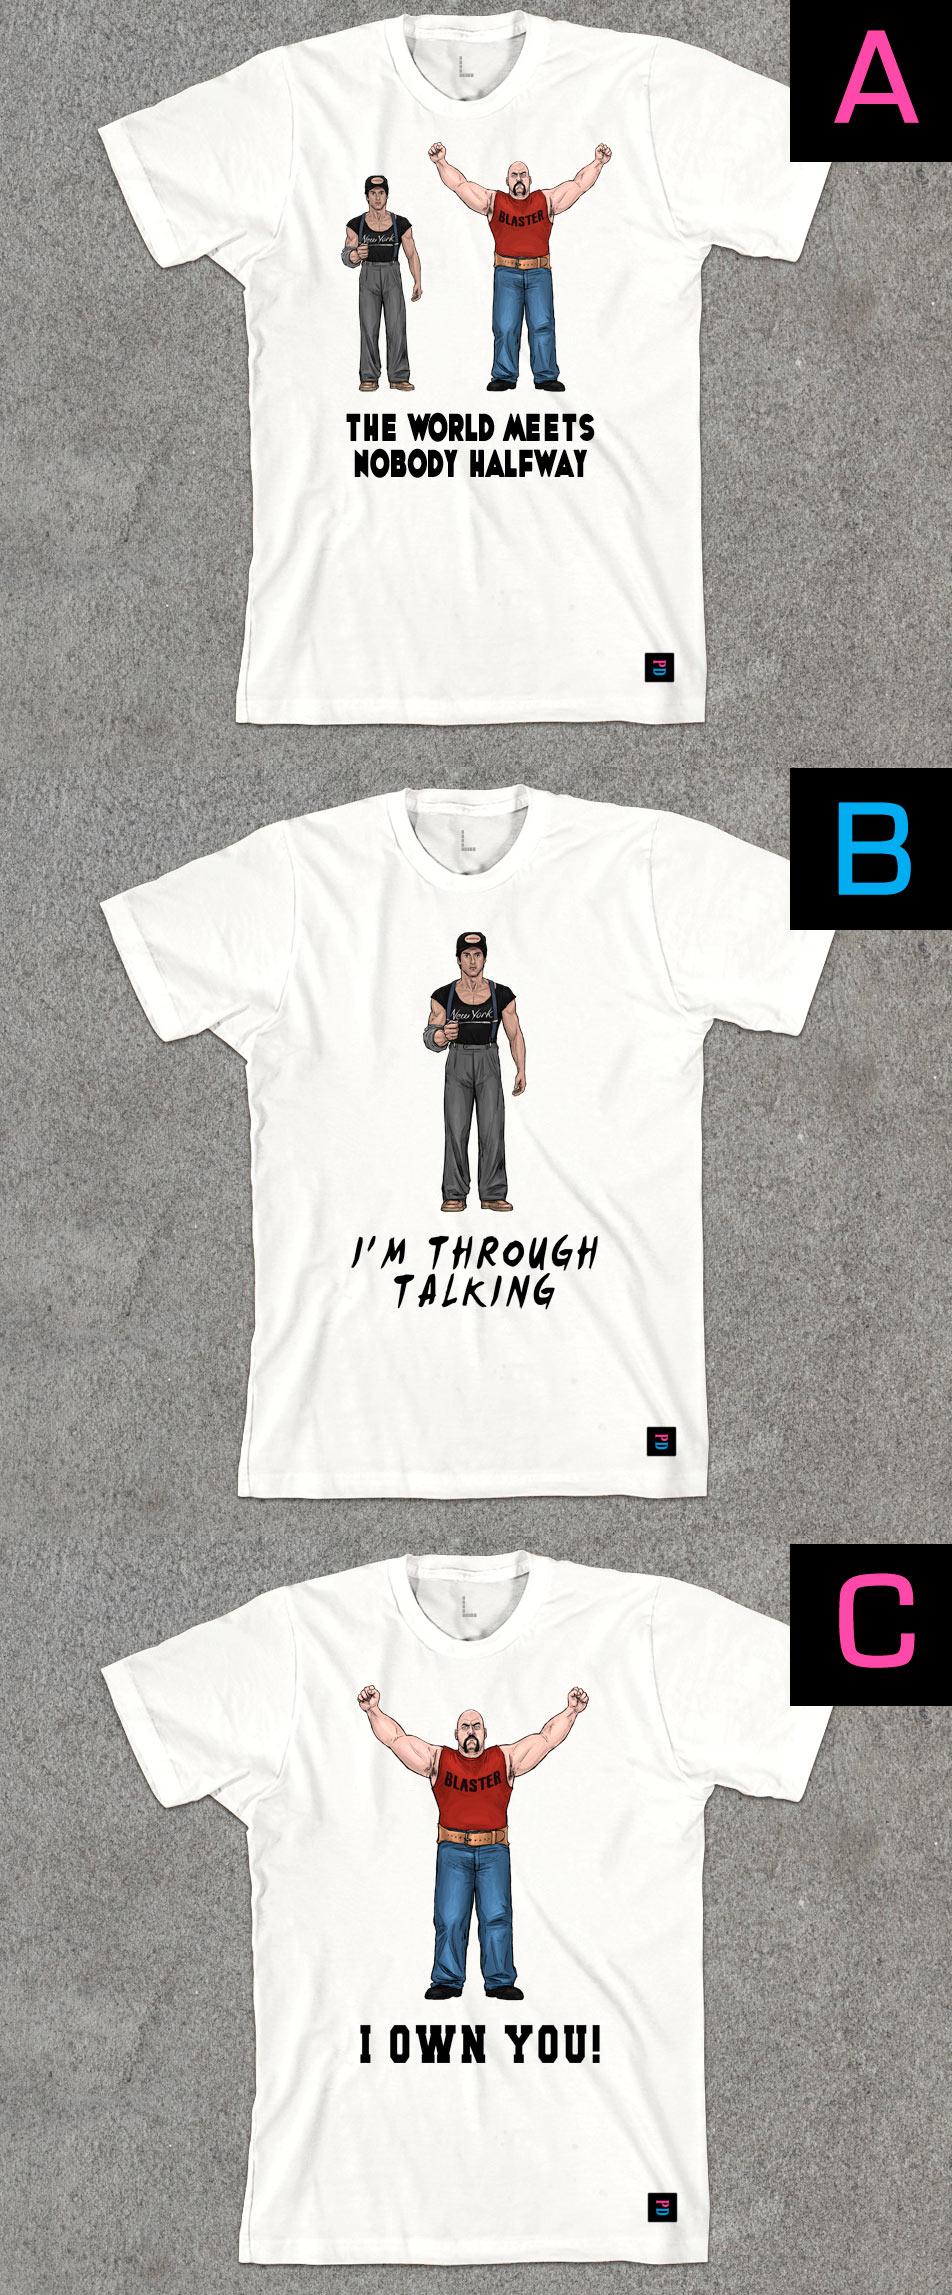 Just Wait Til Vegas PD T-Shirt designs by Marten Go aka MGO